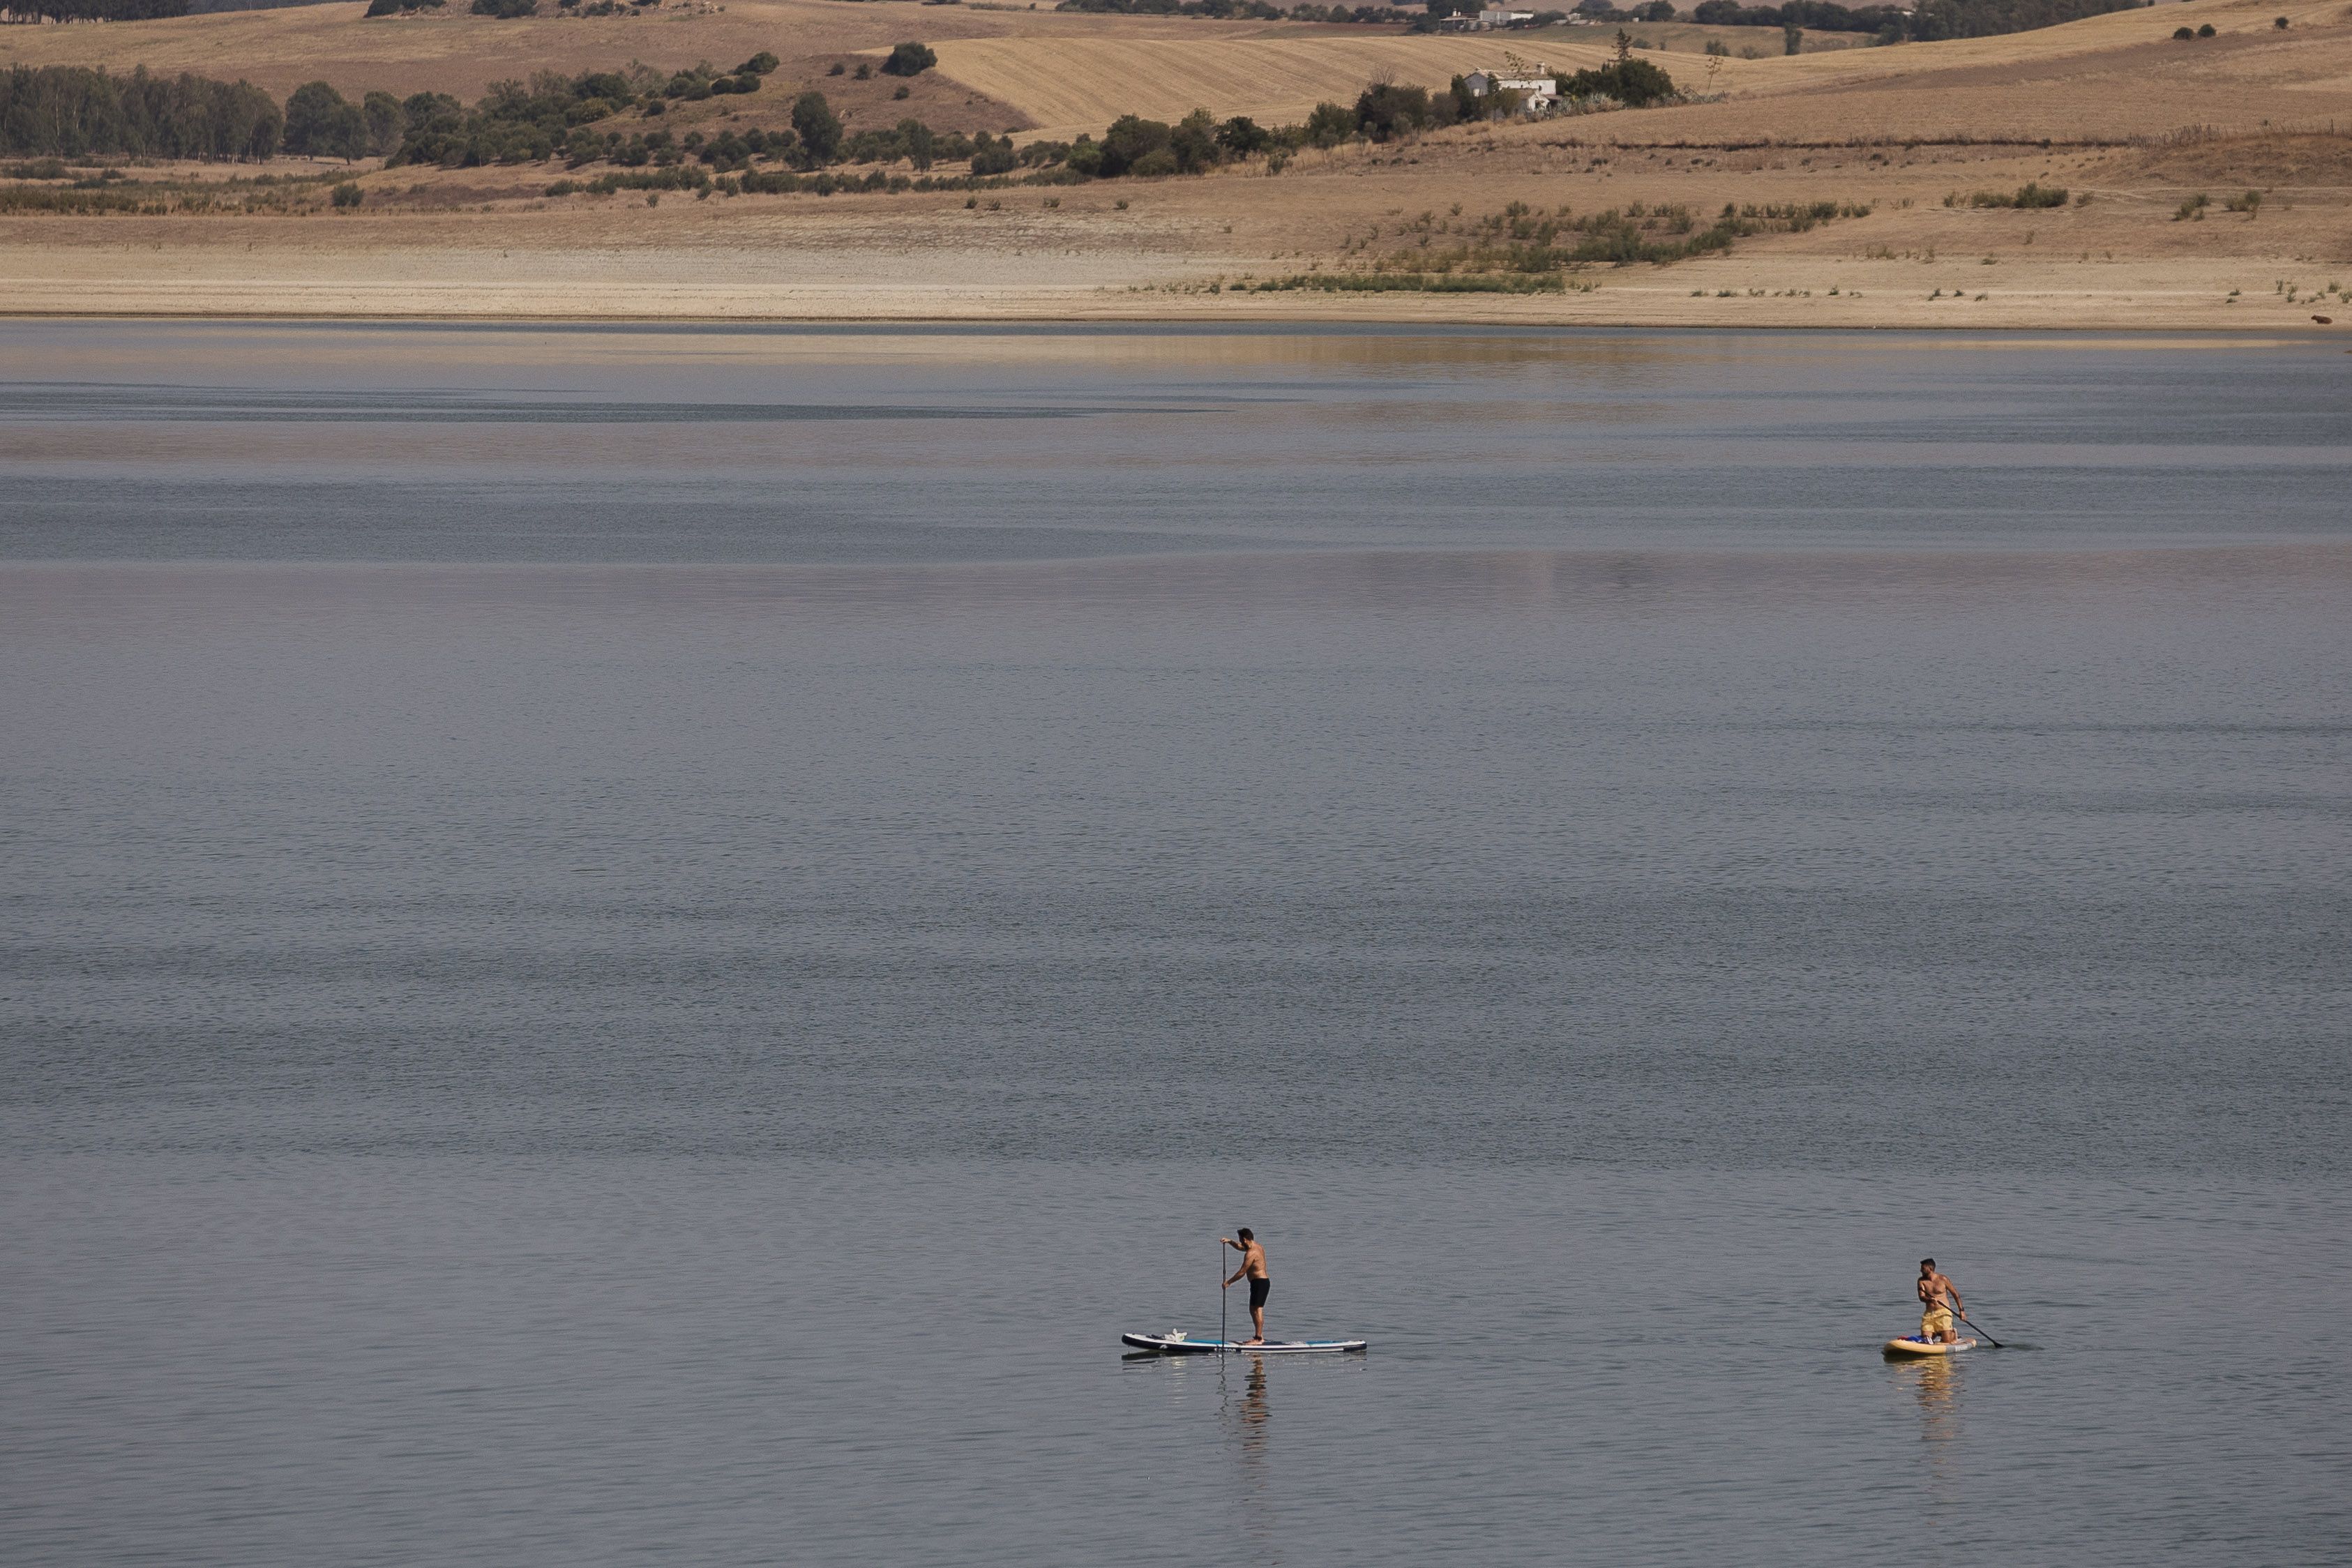 Personas practicando deporte en un pantano, en plena sequía, con falta de agua.